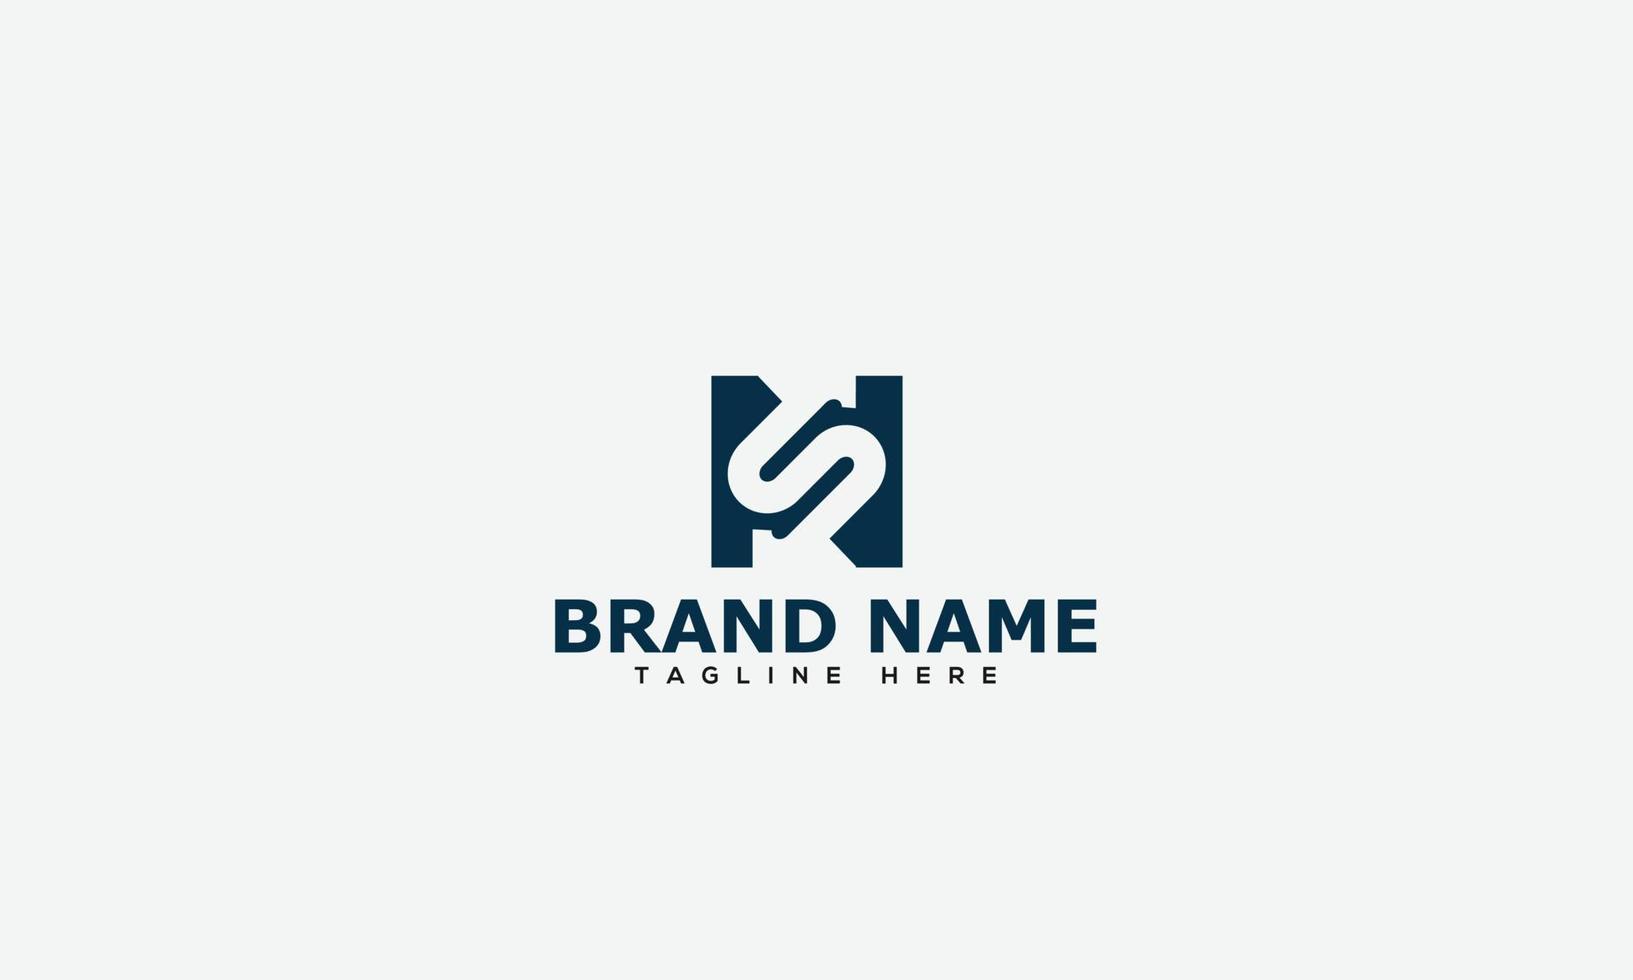 ns logo design modello vettore grafico il branding elemento.